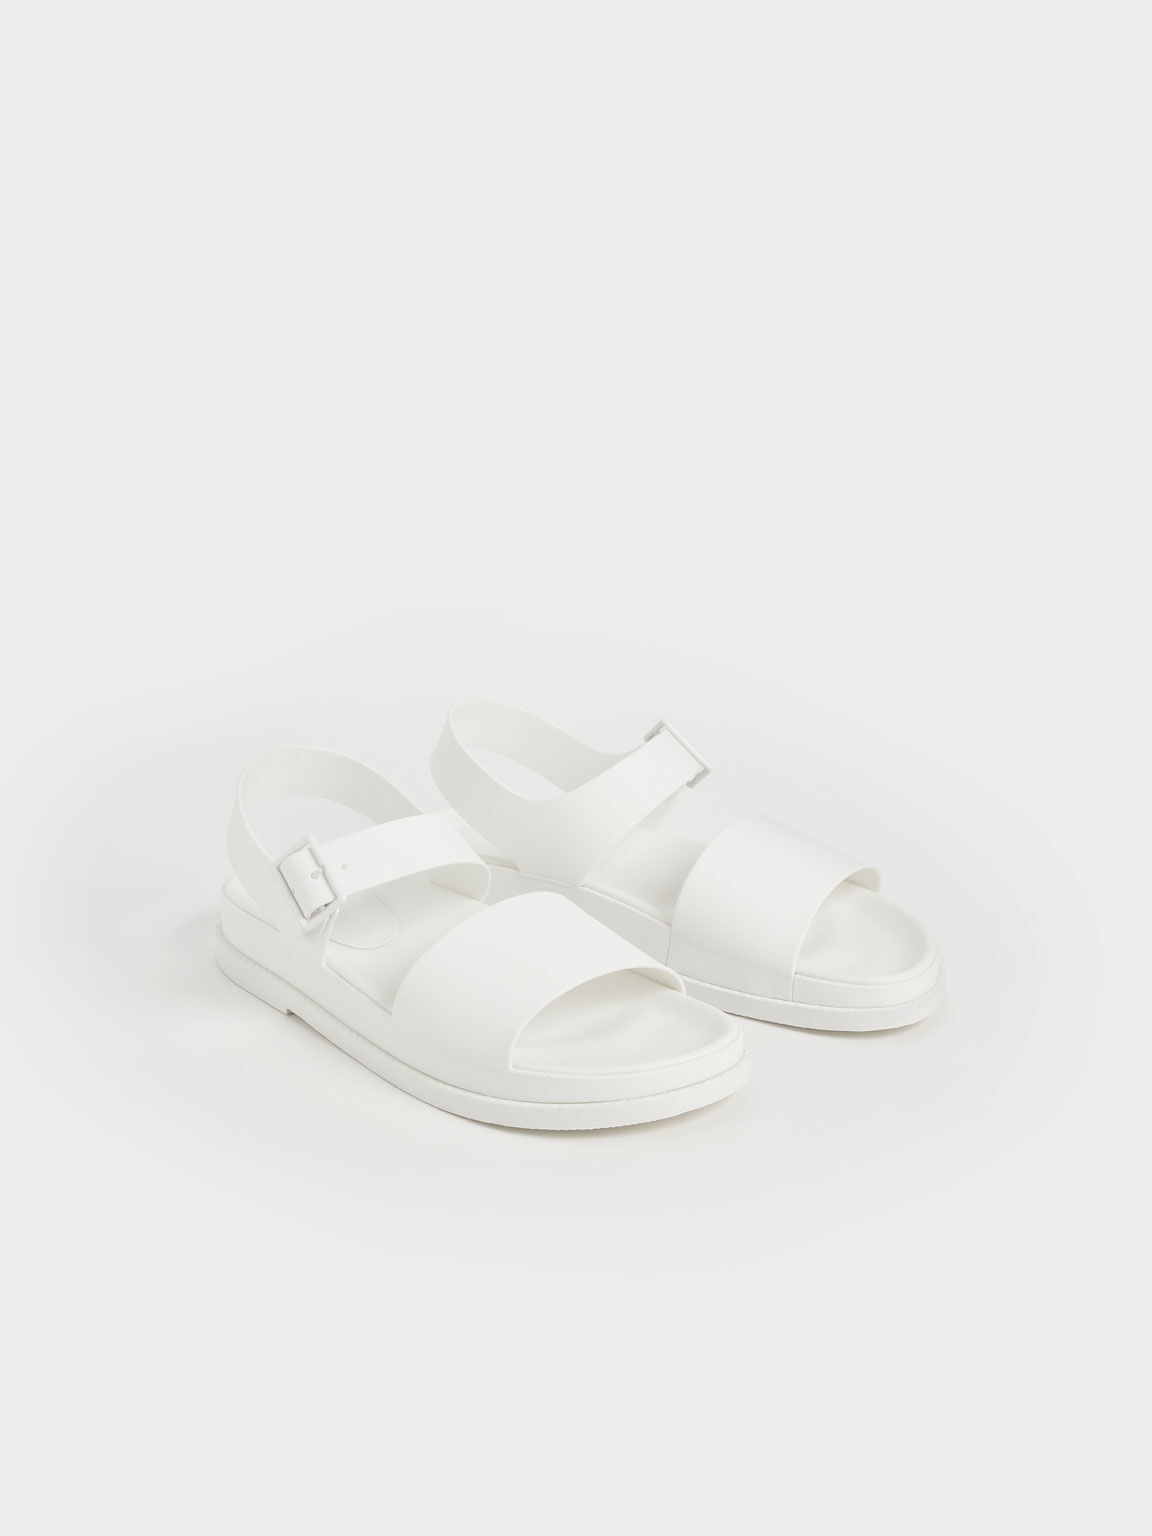 Sandal Flatform Buckle Strap, White, hi-res